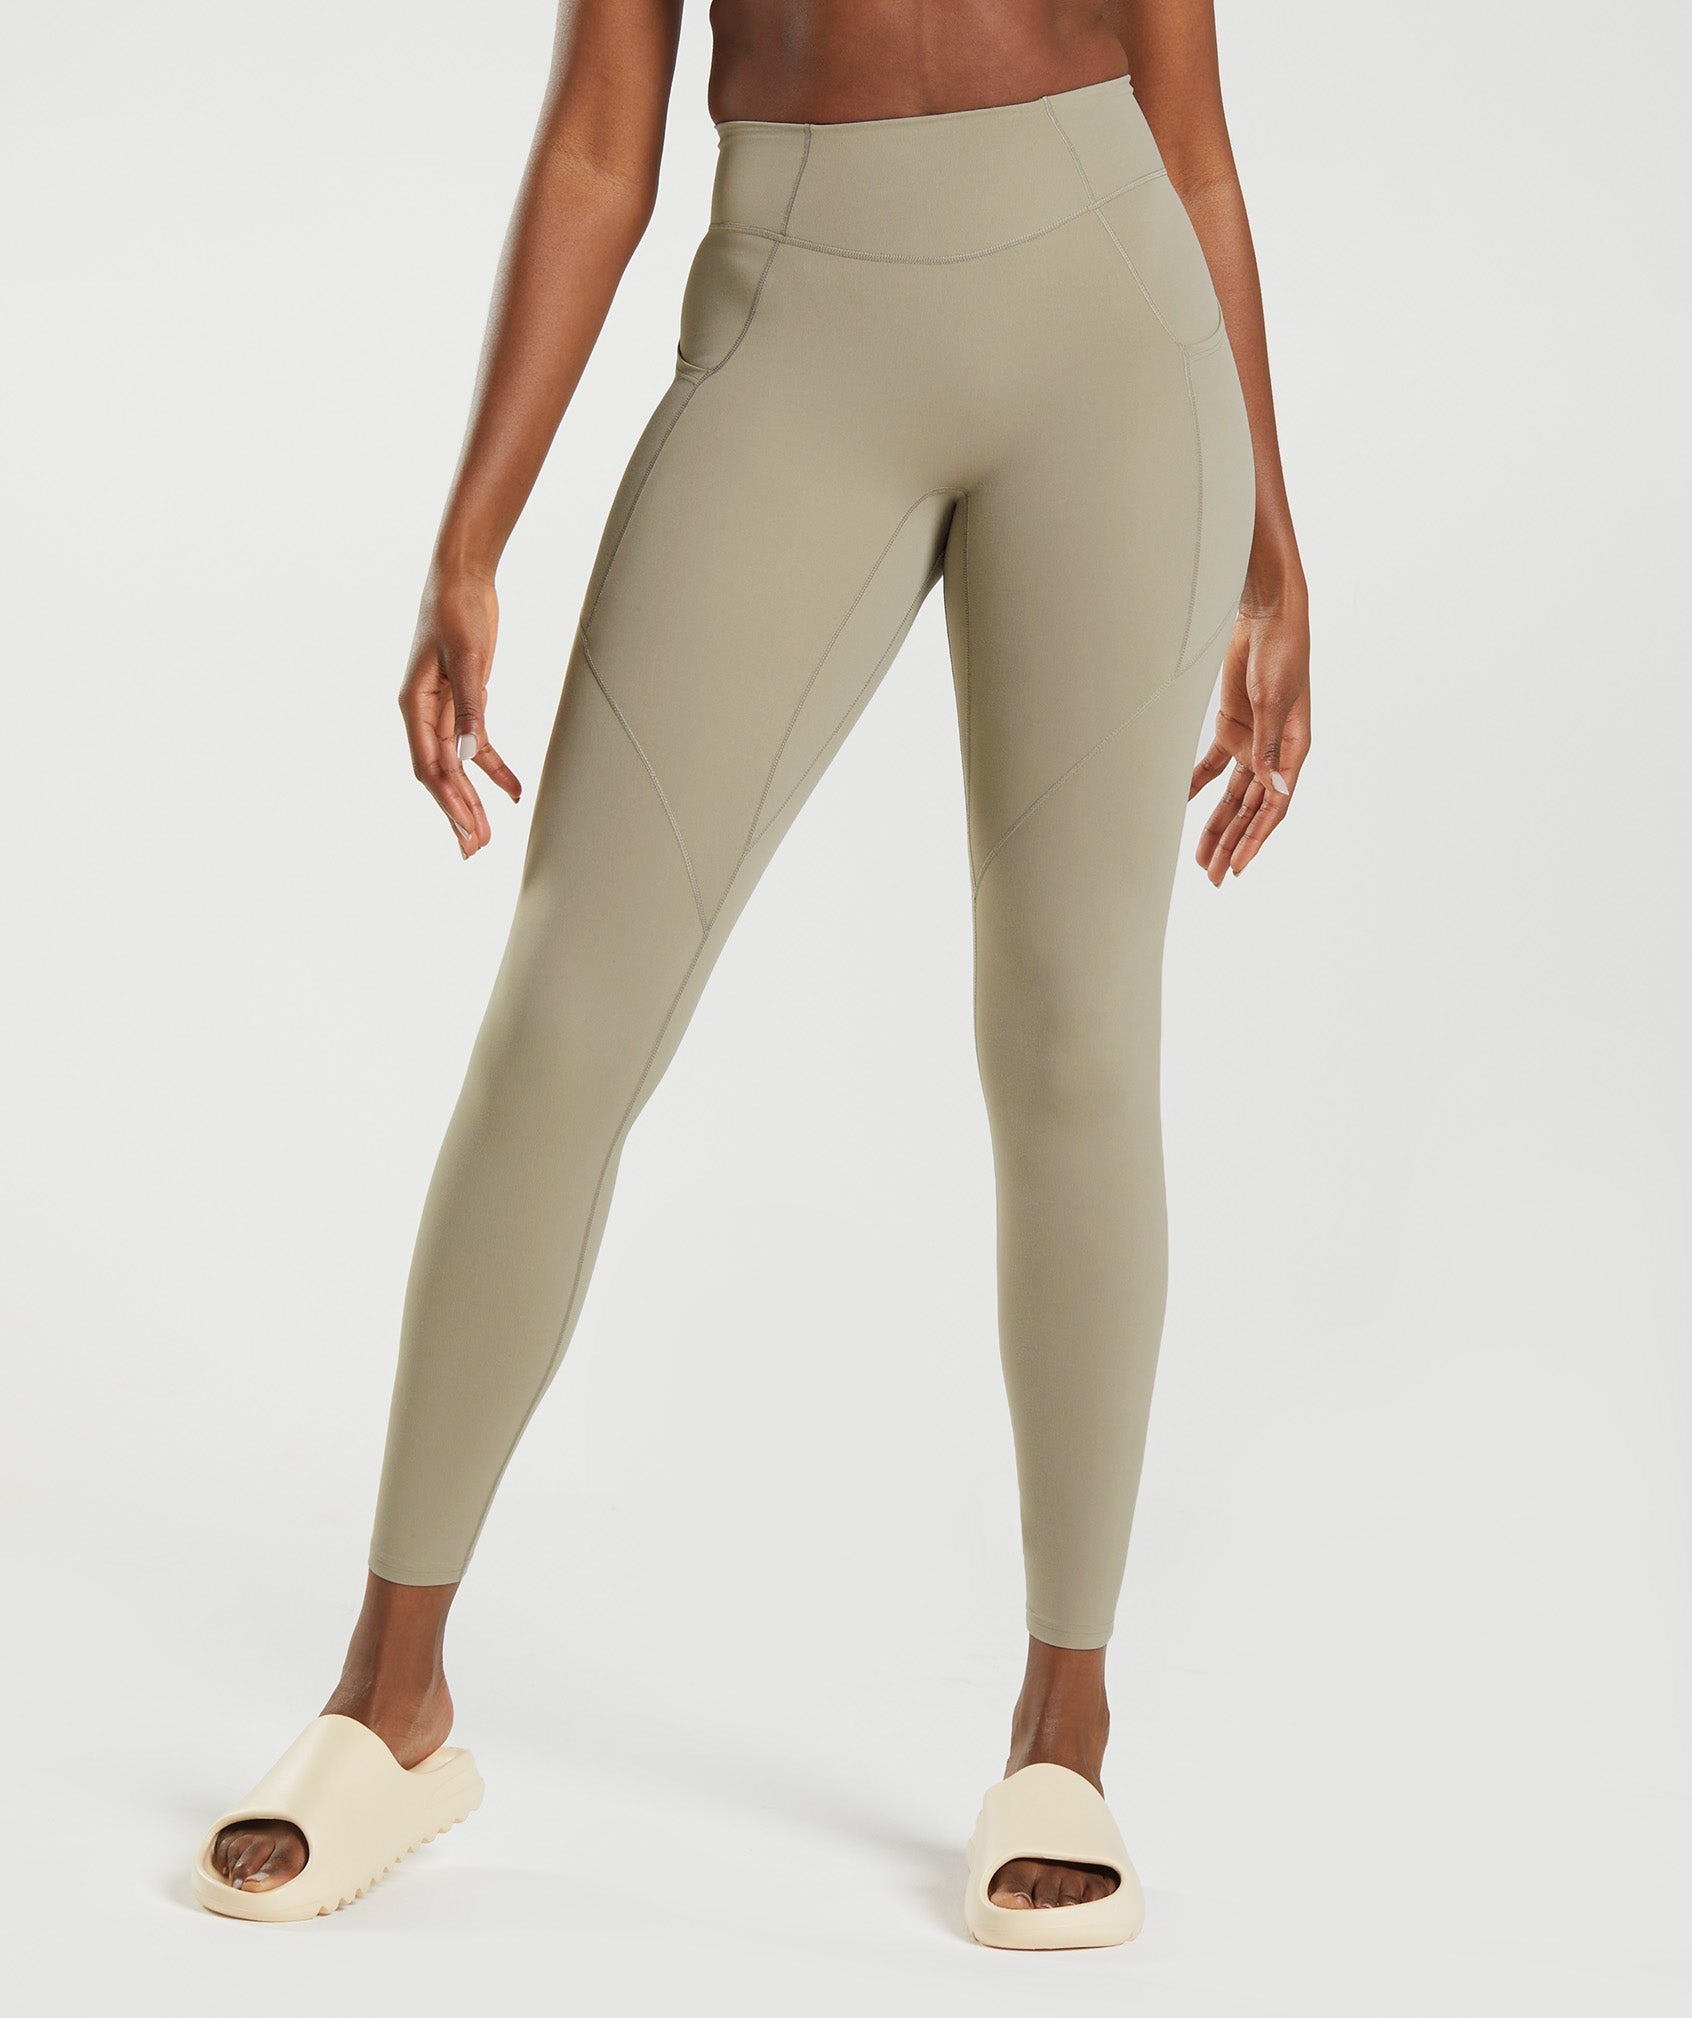 Gymshark Whitney Simmons Leggings Tan - $36 (63% Off Retail) - From Madeline